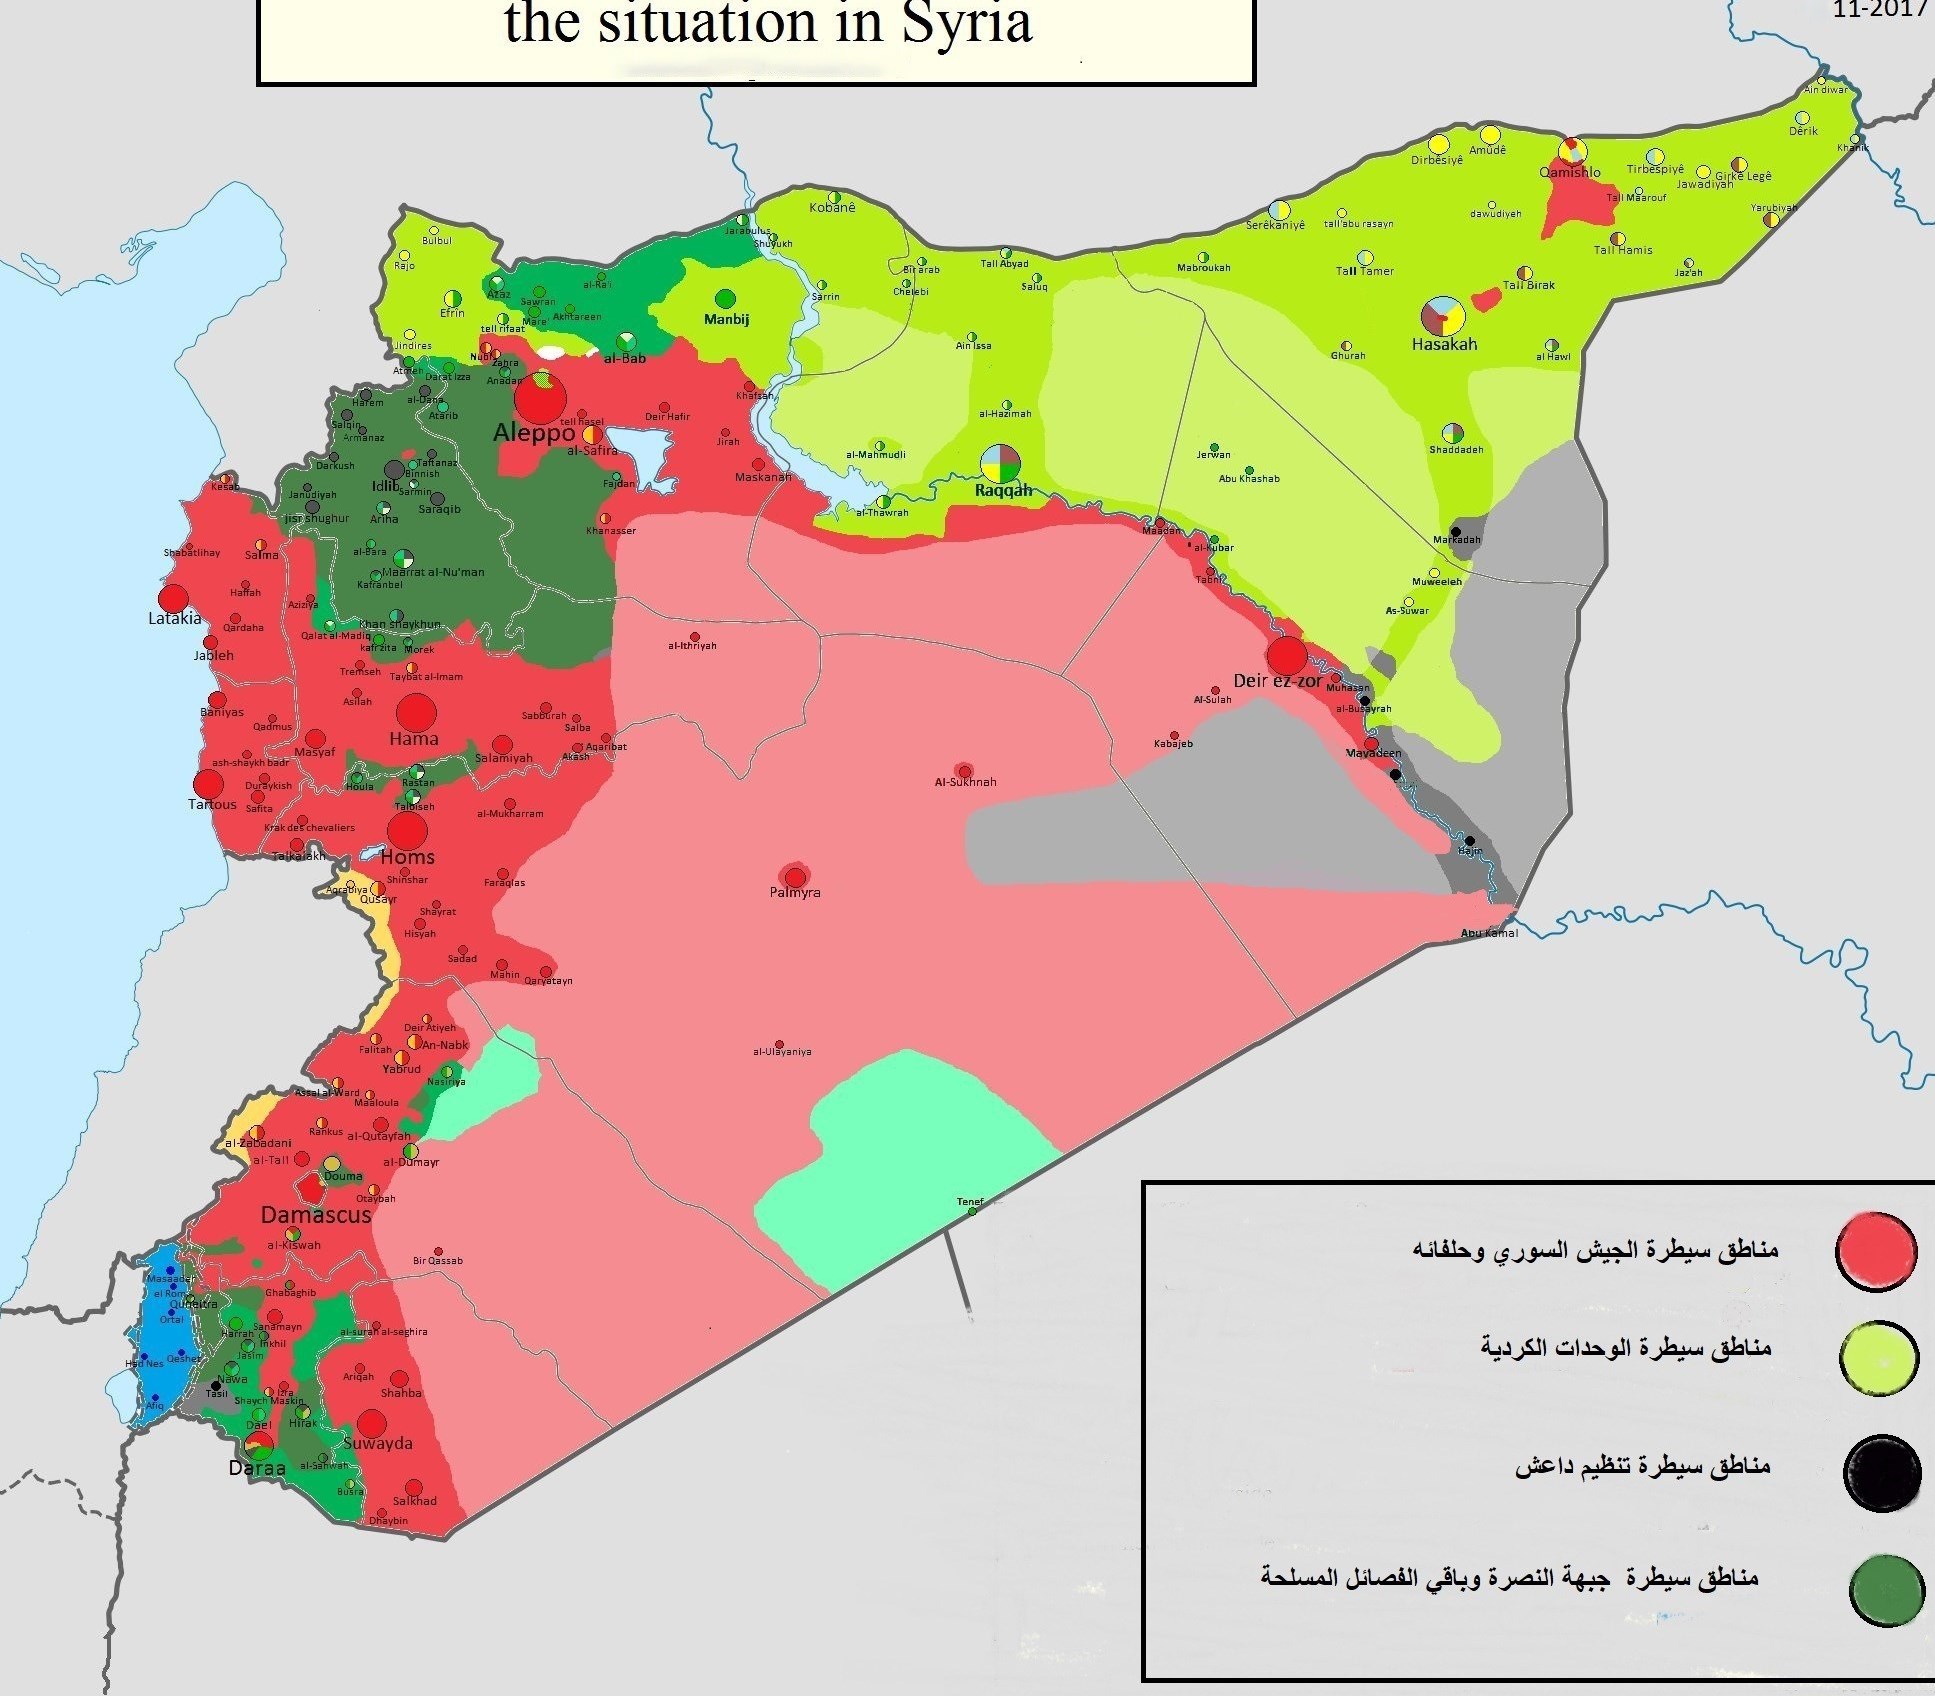     نقشه سوریه در سال 2017 و سال پایان افسانه دولت خلافت موهوم در شام